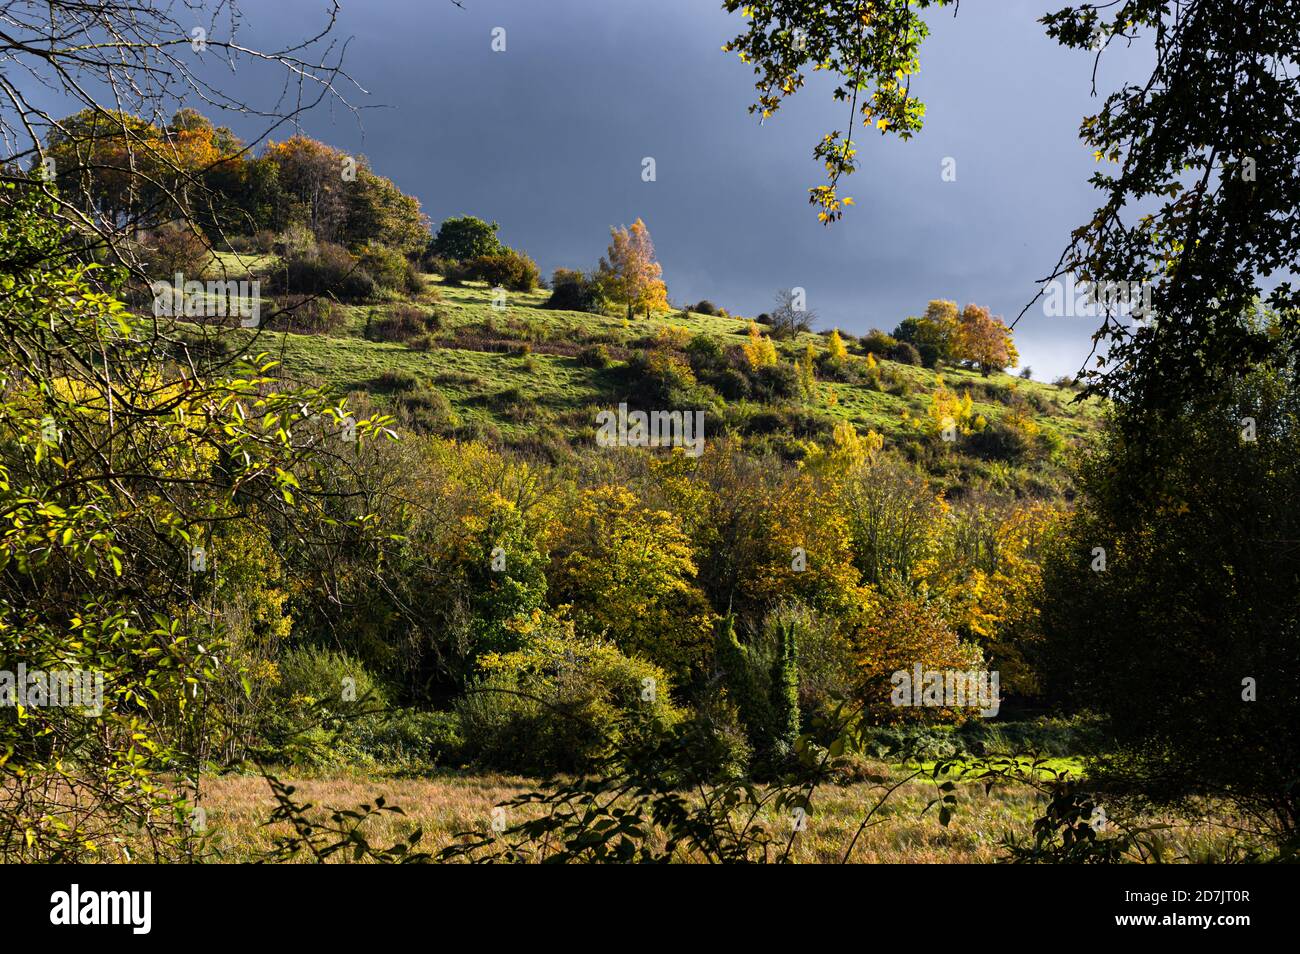 La luce solare del tardo pomeriggio in autunno proietta una luce vivida sugli alberi e sulle piante sulla collina di Santa Caterina a Winchester, Hampshire, Inghilterra. Foto Stock